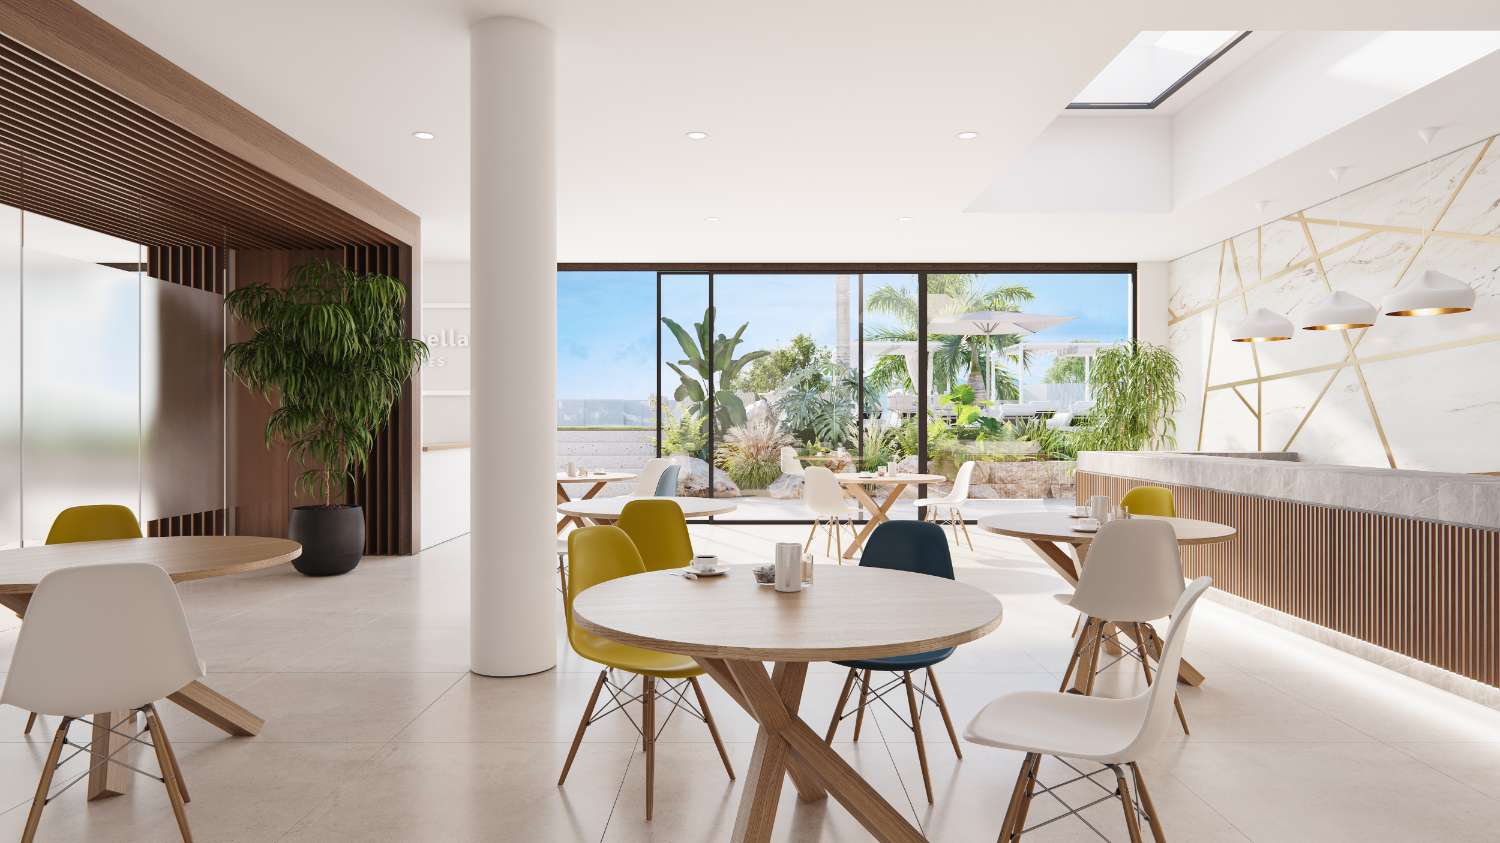 Spacieux et exclusif appartement de quatre chambres avec jardin privé de 221 m2 dans Resort à Marbella, sur la première ligne du terrain de golf